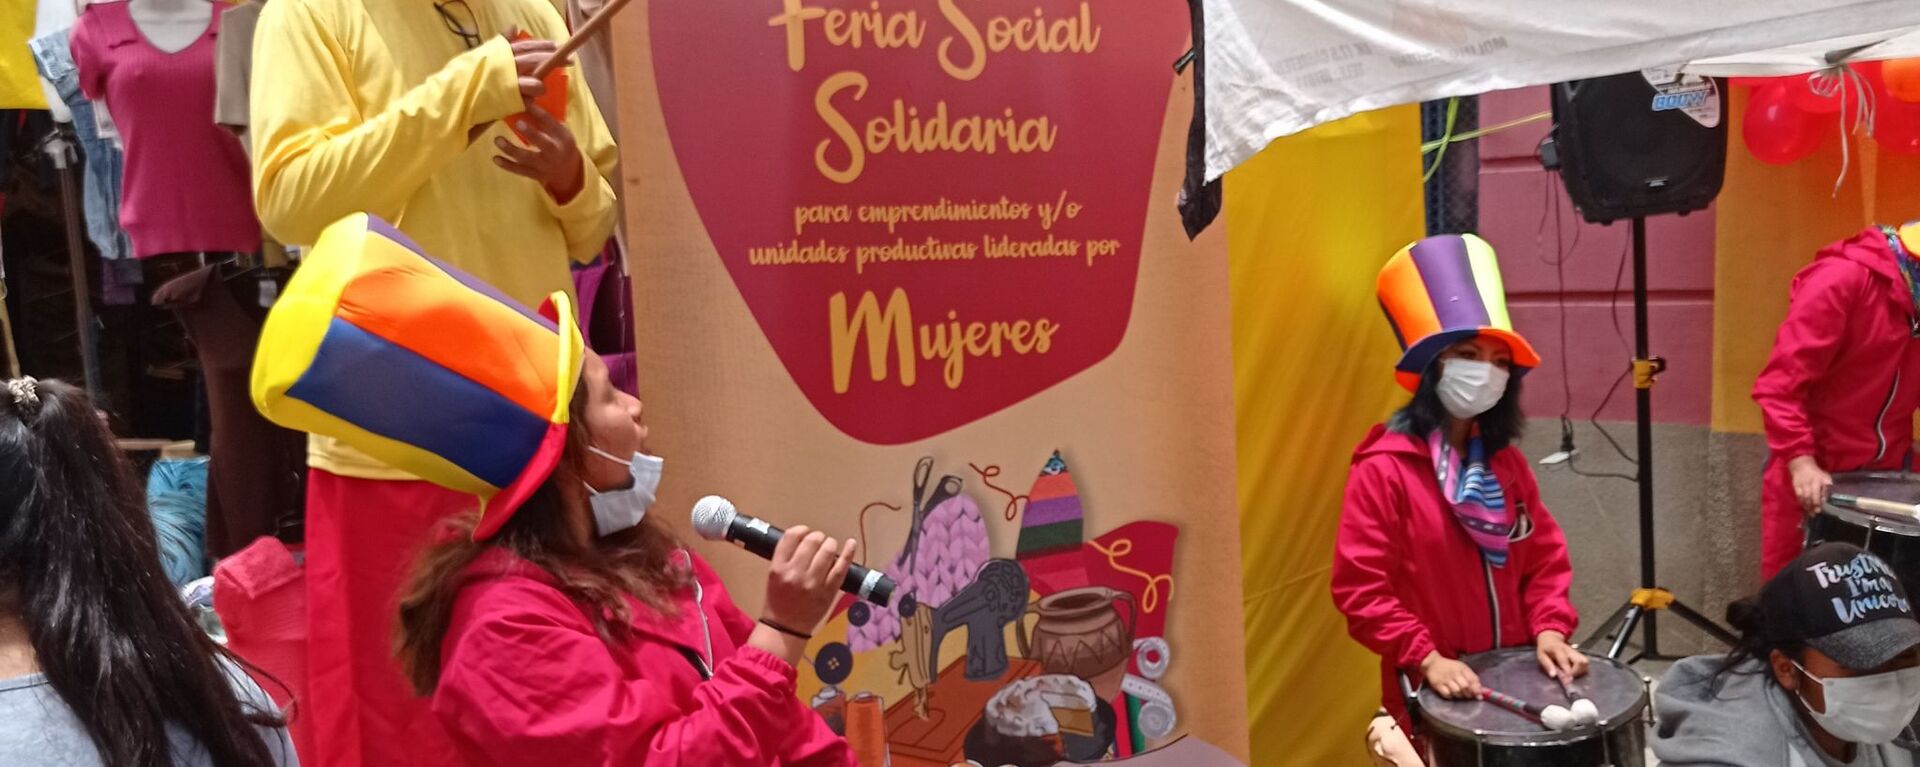 Feria Social Solidaria para emprendimientos y unidades productivas lideradas por Mujeres, en El Alto - Sputnik Mundo, 1920, 11.12.2020